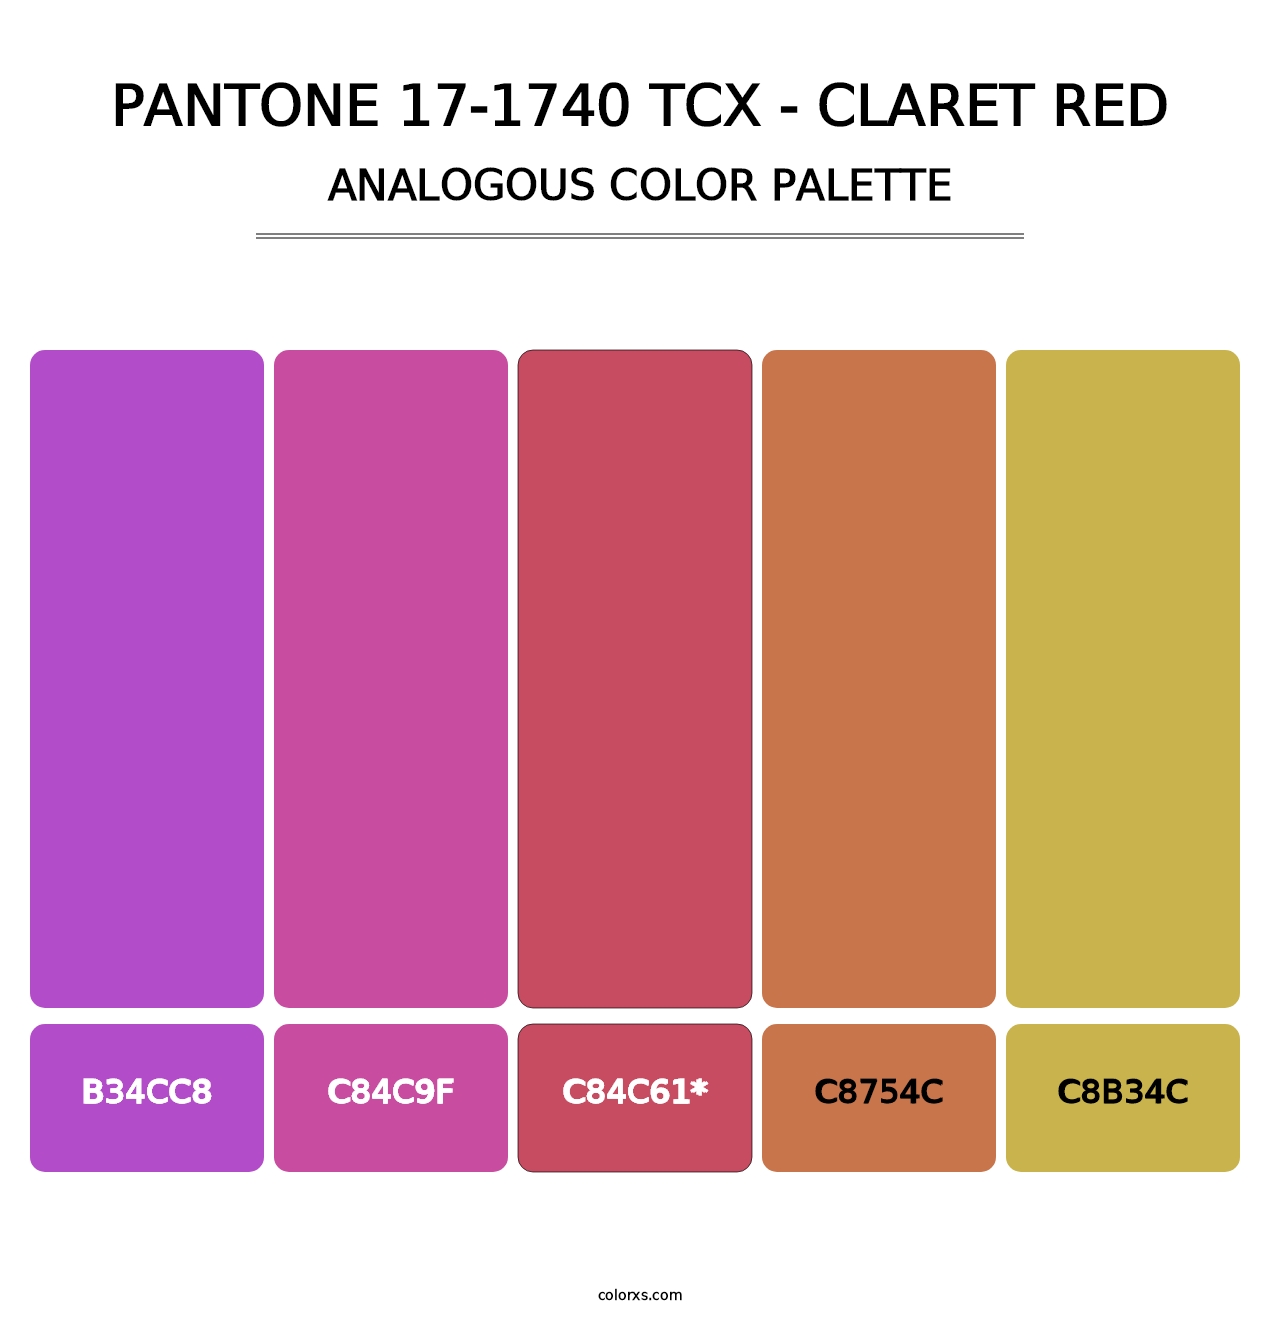 PANTONE 17-1740 TCX - Claret Red - Analogous Color Palette